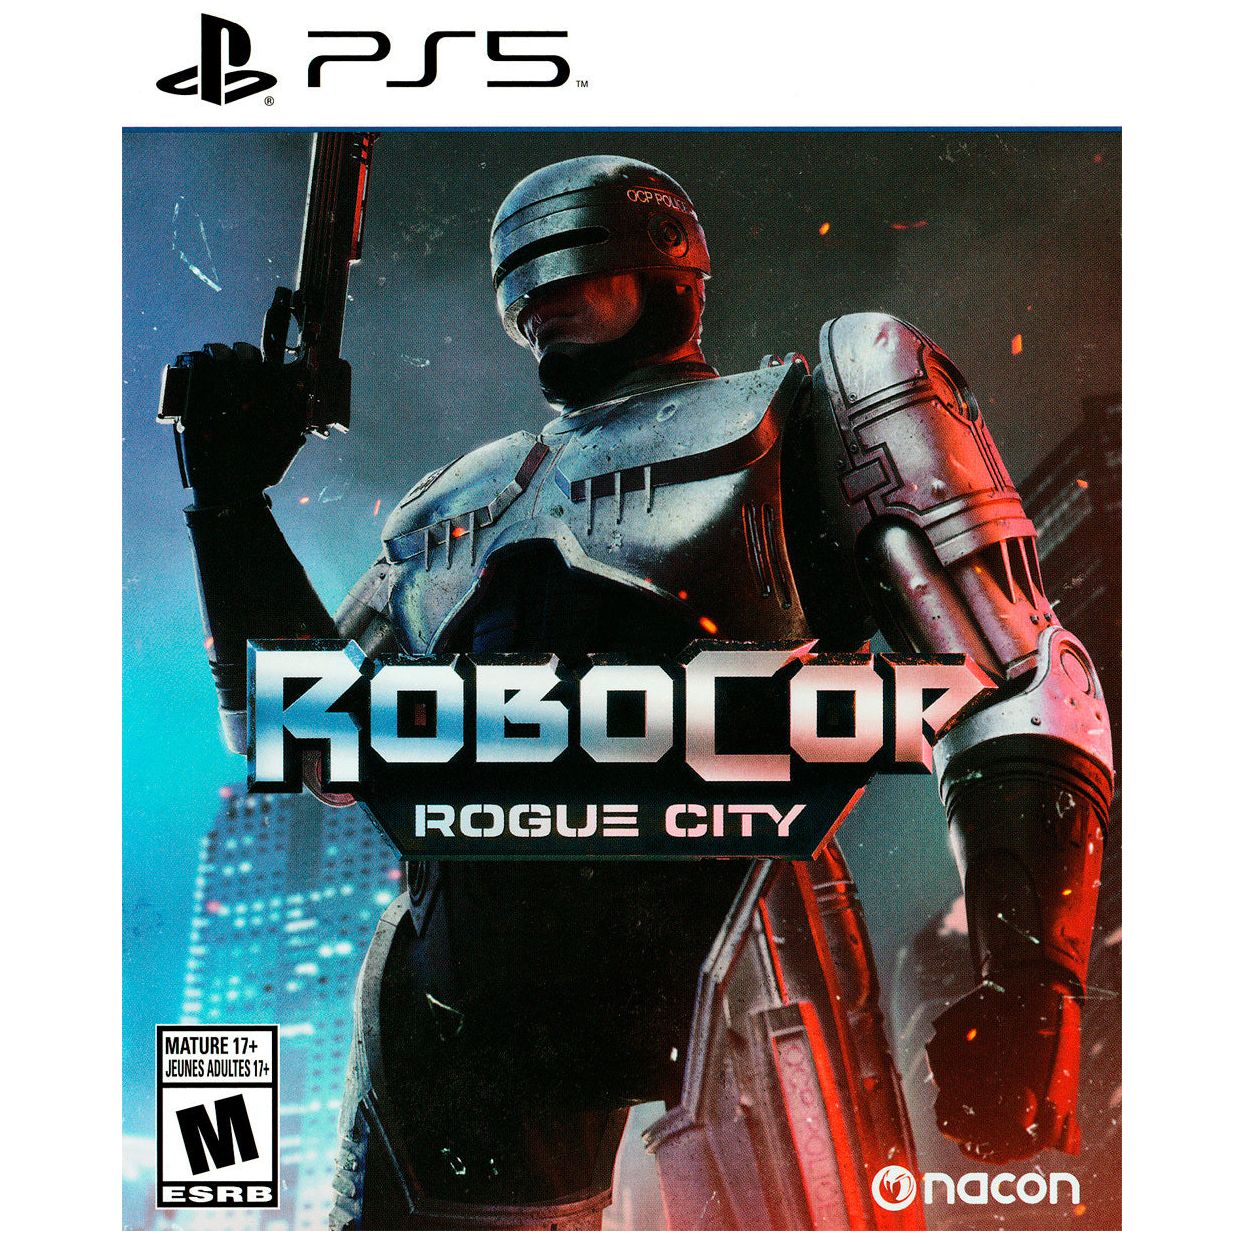 PS5 - RoboCop Rogue City (Sealed)